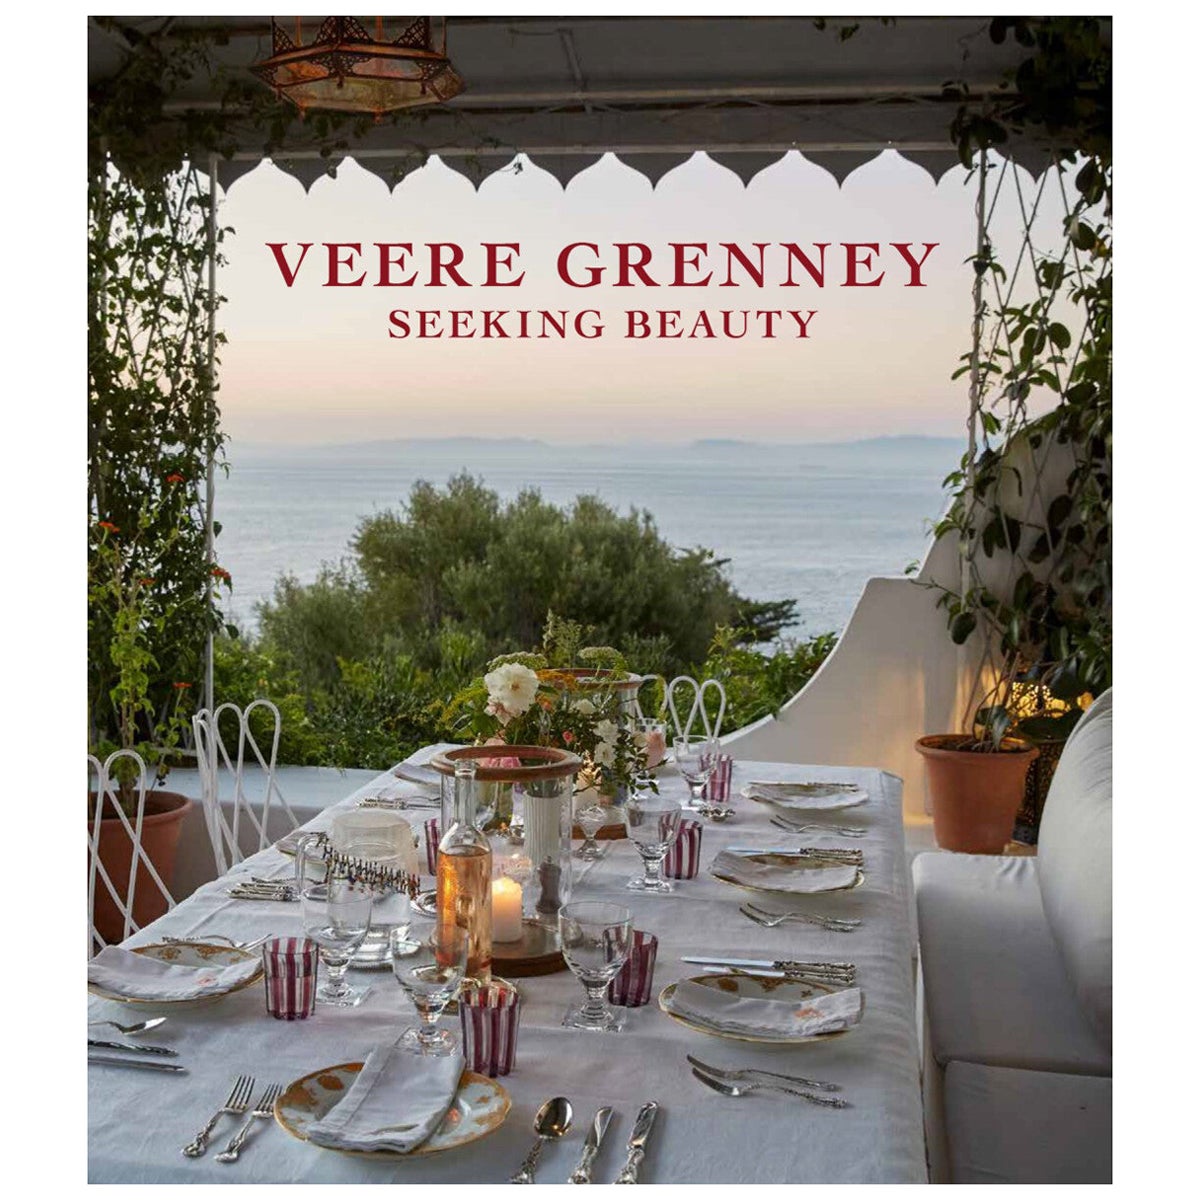 Veere Grenney Seeking Beauty Book by Veere Grenney